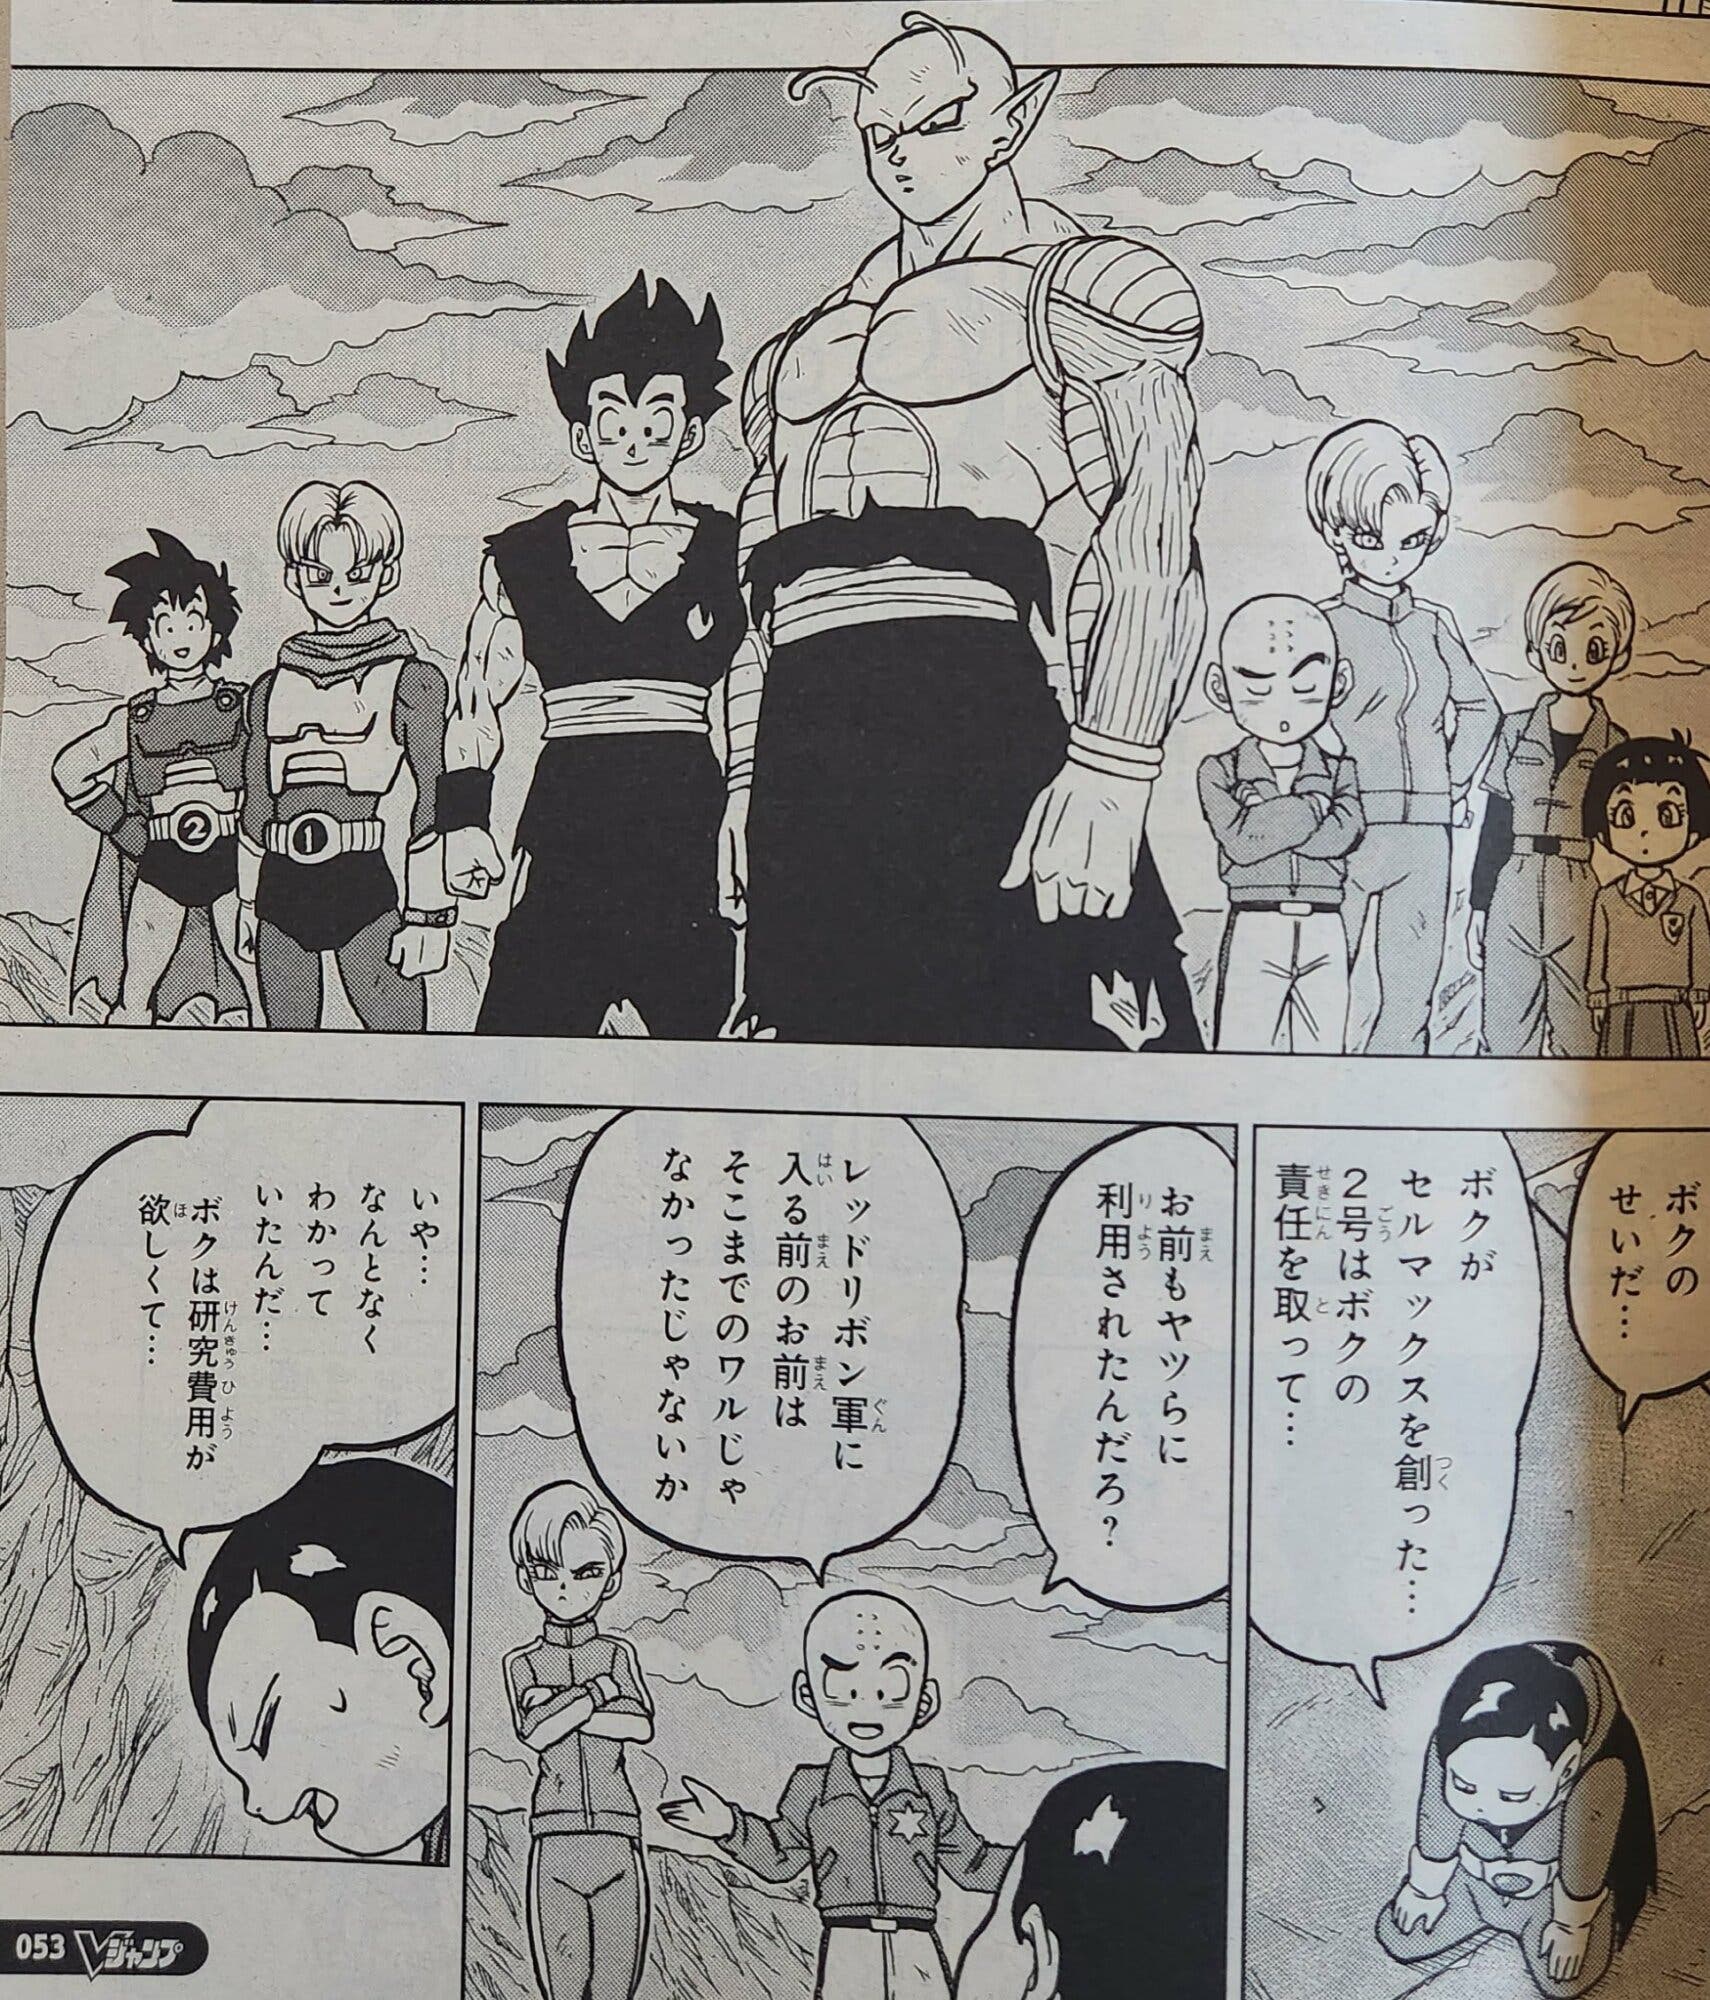 Dragon Ball Super apunta alto: el capítulo 100 del manga dejará